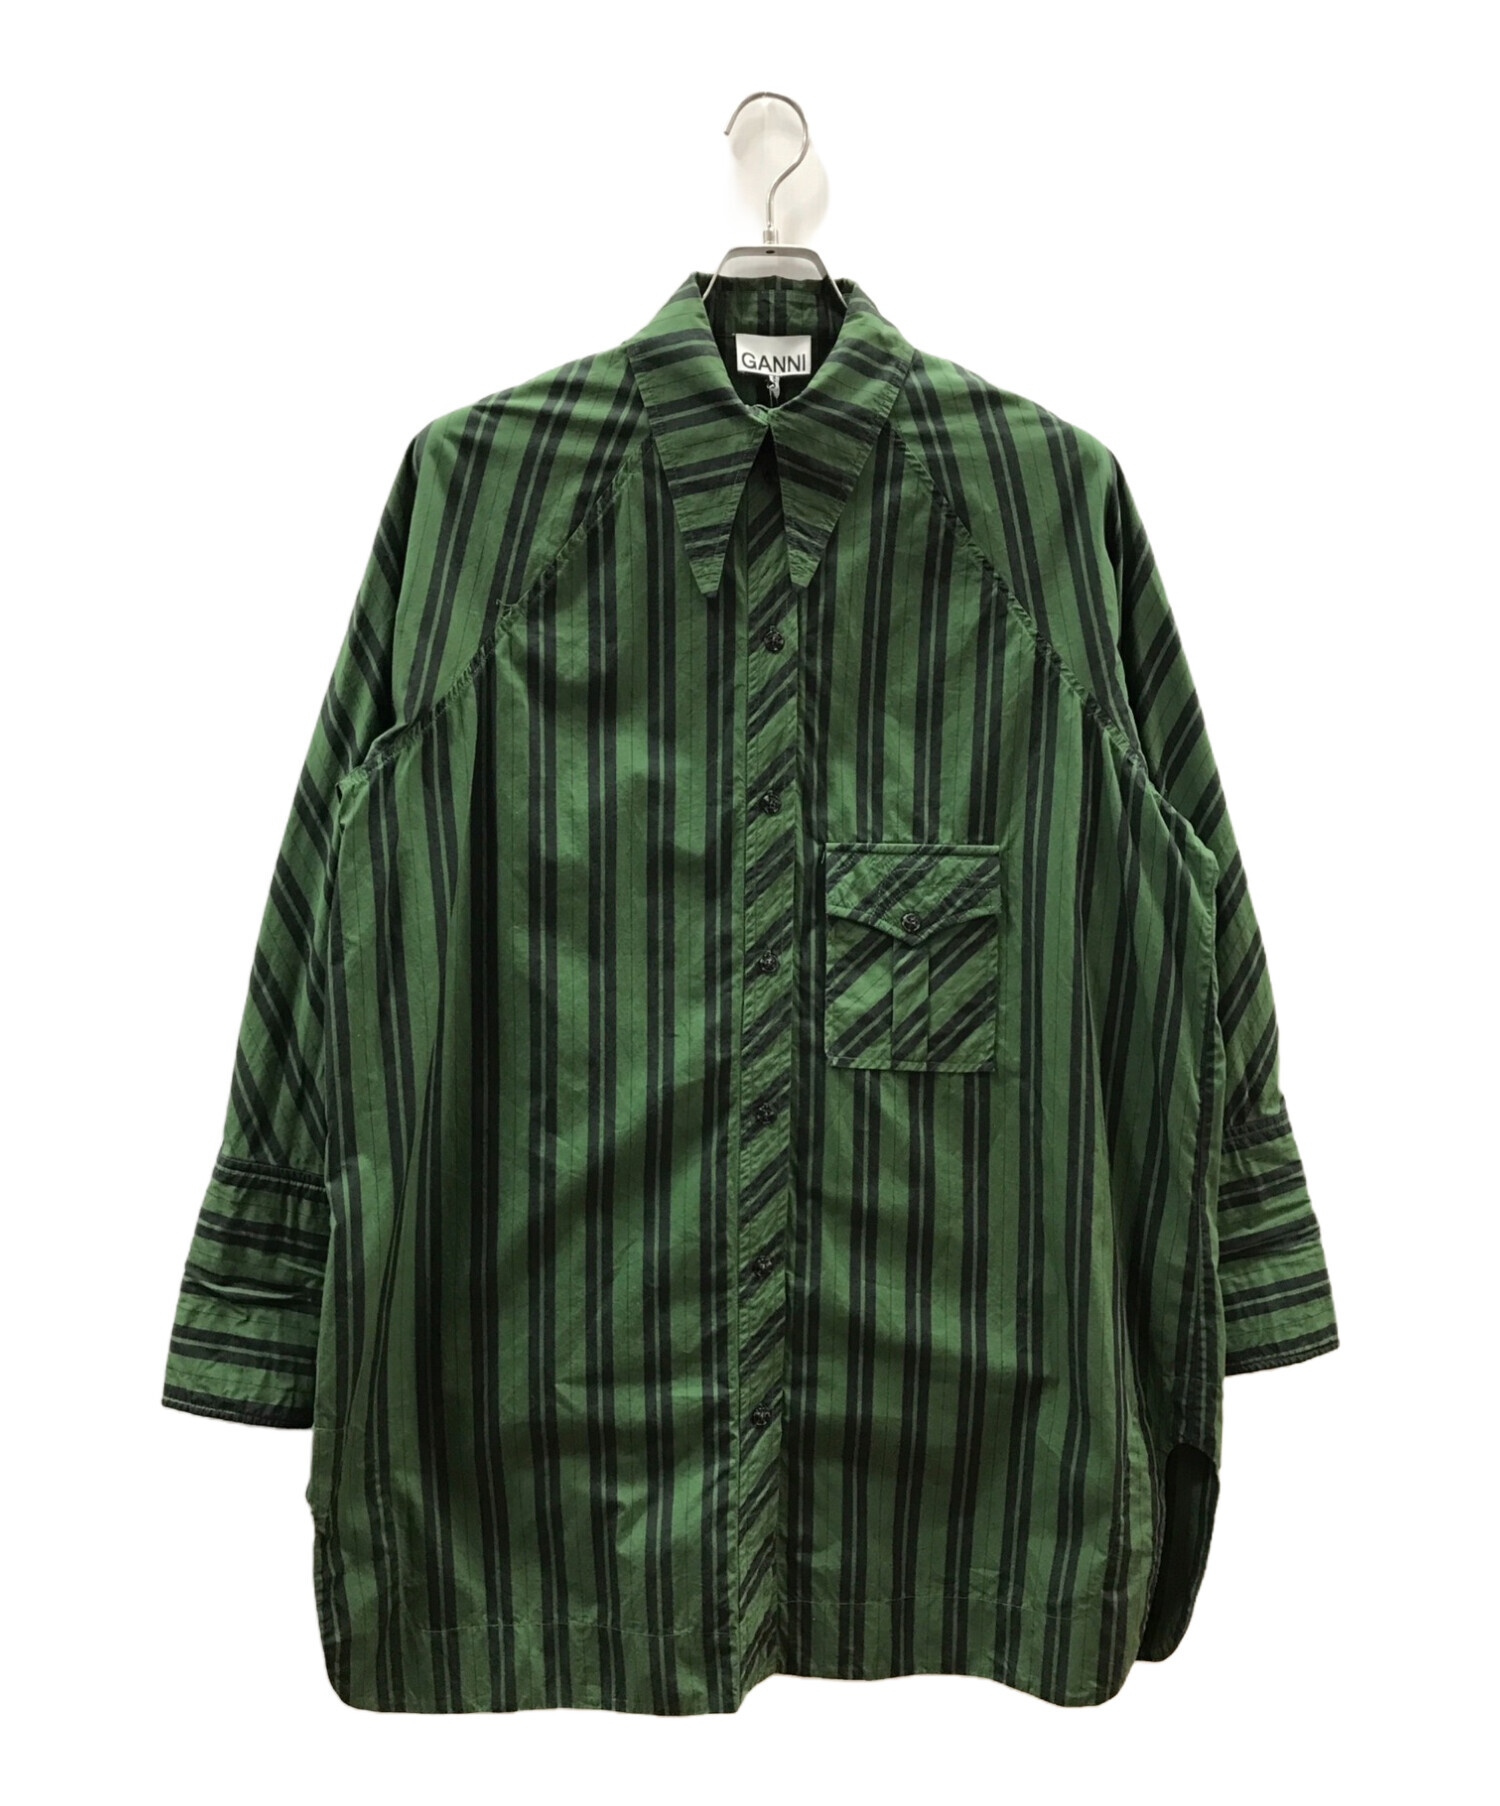 中古・古着通販】Ganni (ガニー) Stripe Cotton Shirt グリーン サイズ 